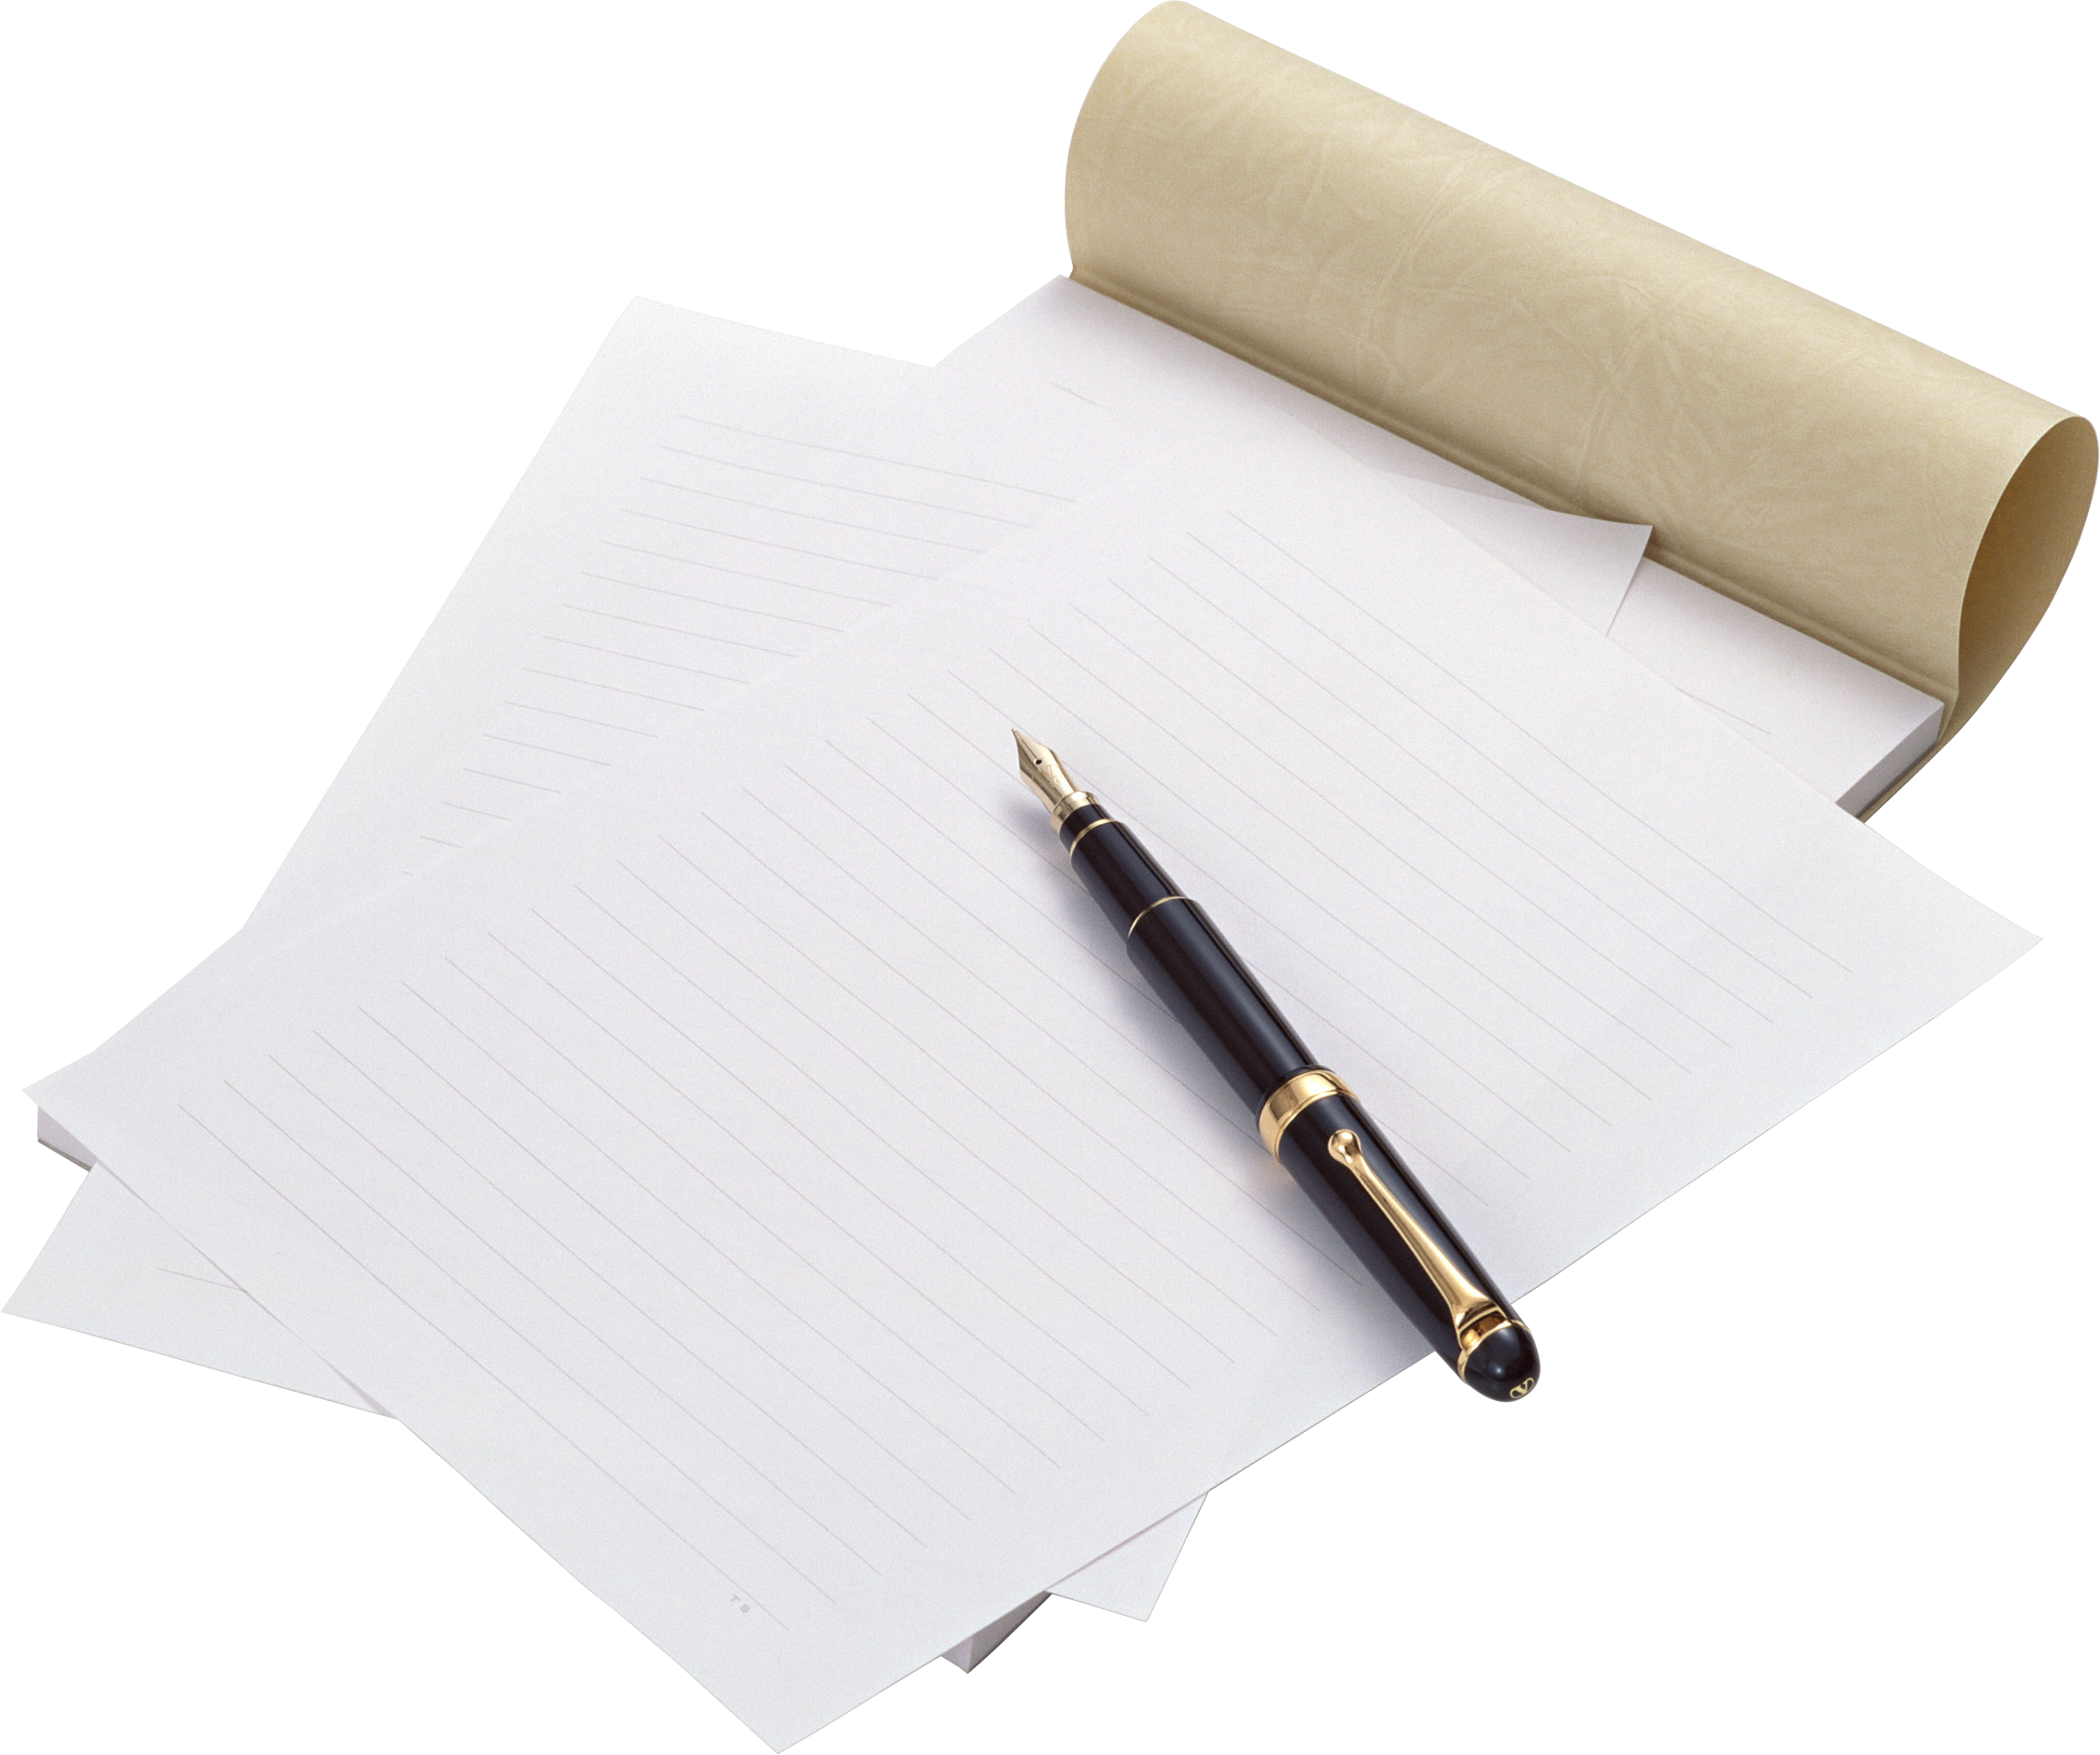 Sheet of paper. Ручка и бумага. Лист бумаги. Лист бумаги и ручка. Ручка и листок бумаги.